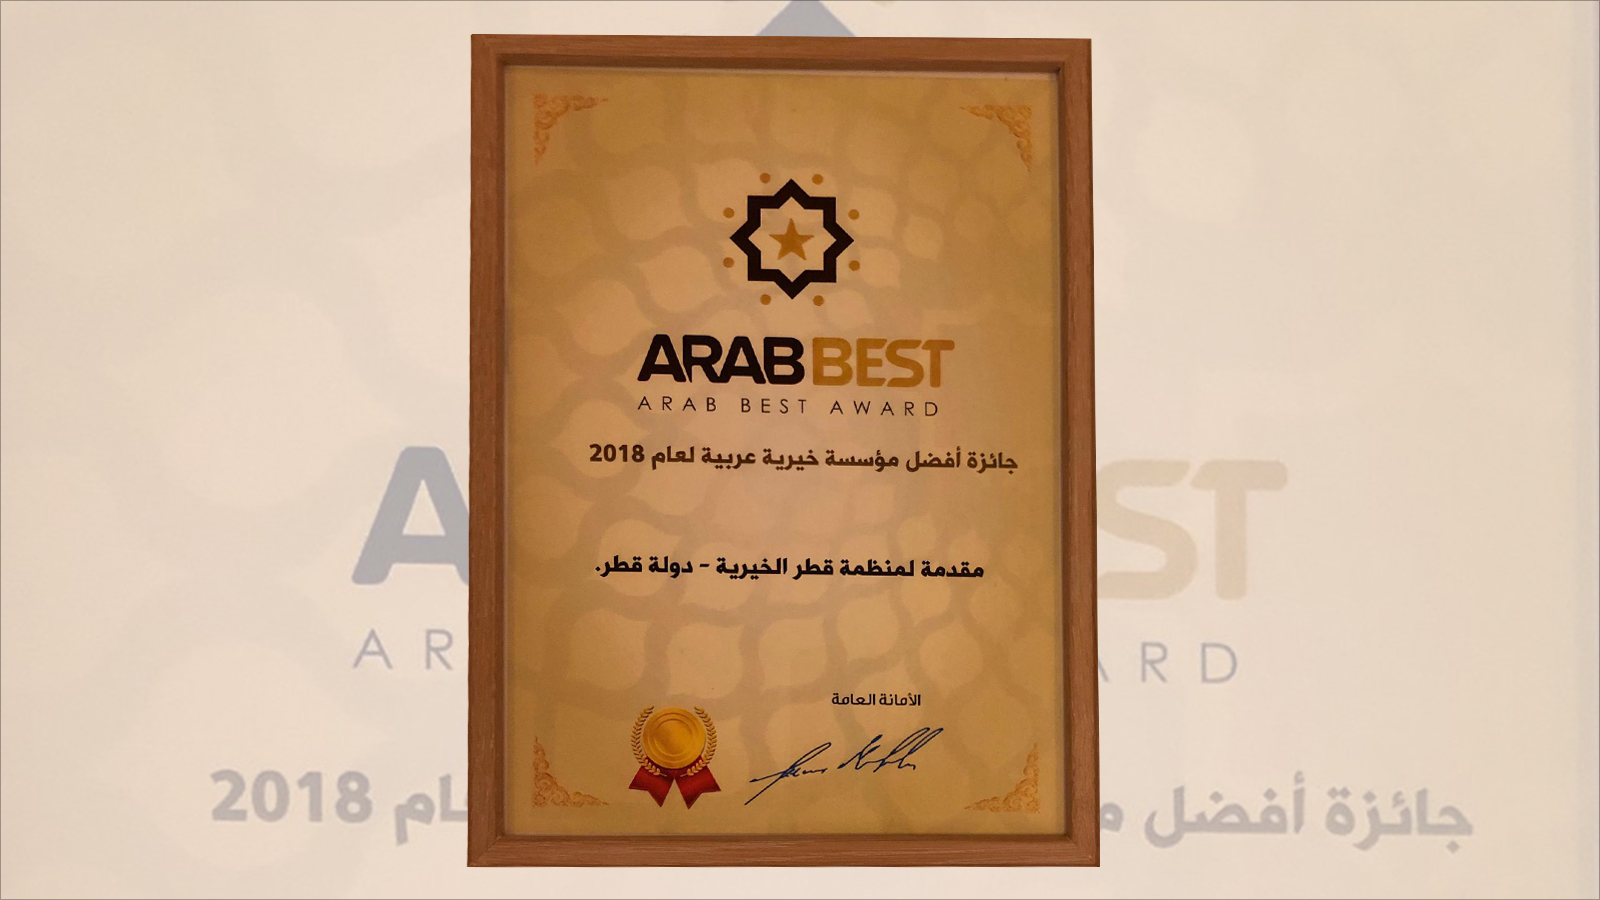 قطر الخيرية فازت بجائزة أفضل العرب للمرة الثانية على التوالي(الجزيرة نت)